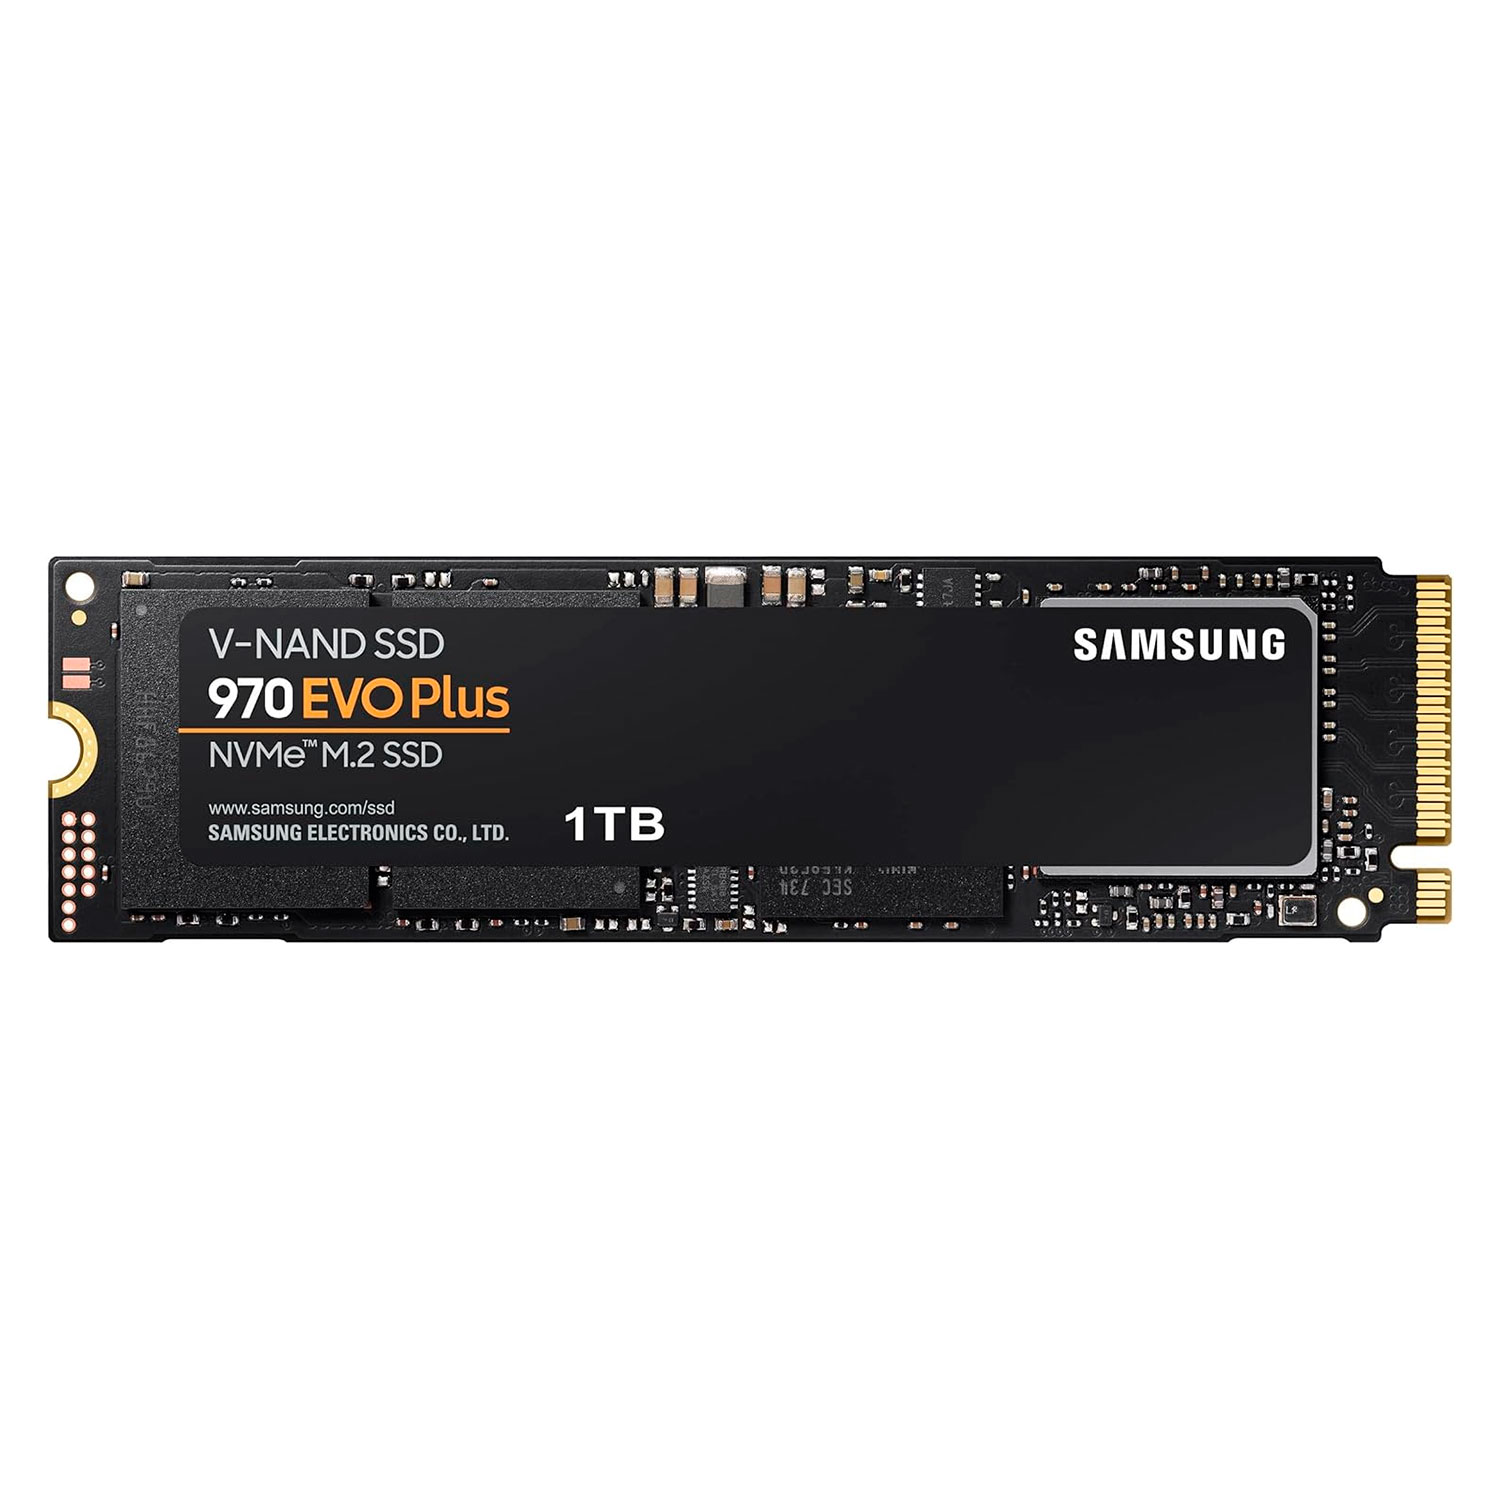 SSD M.2 Samsung 970 Evo Plus 1TB NVMe PCIe 3.0 - MZ-V7S1T0B/AM
